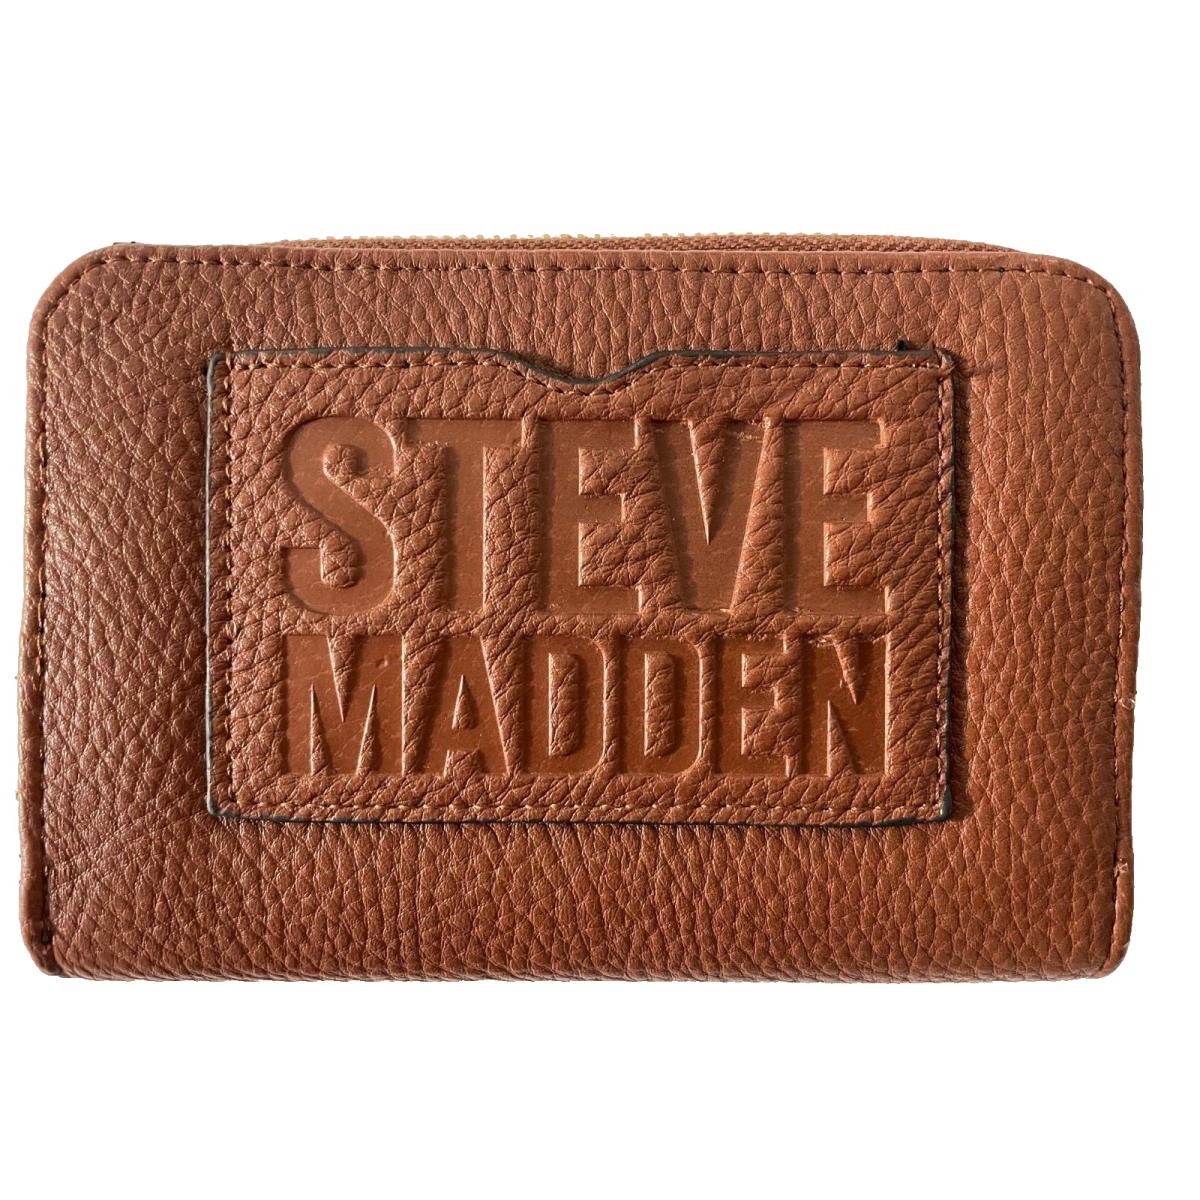 Steve Madden Zip Around Wallet Embossed Logo Cognac Gold